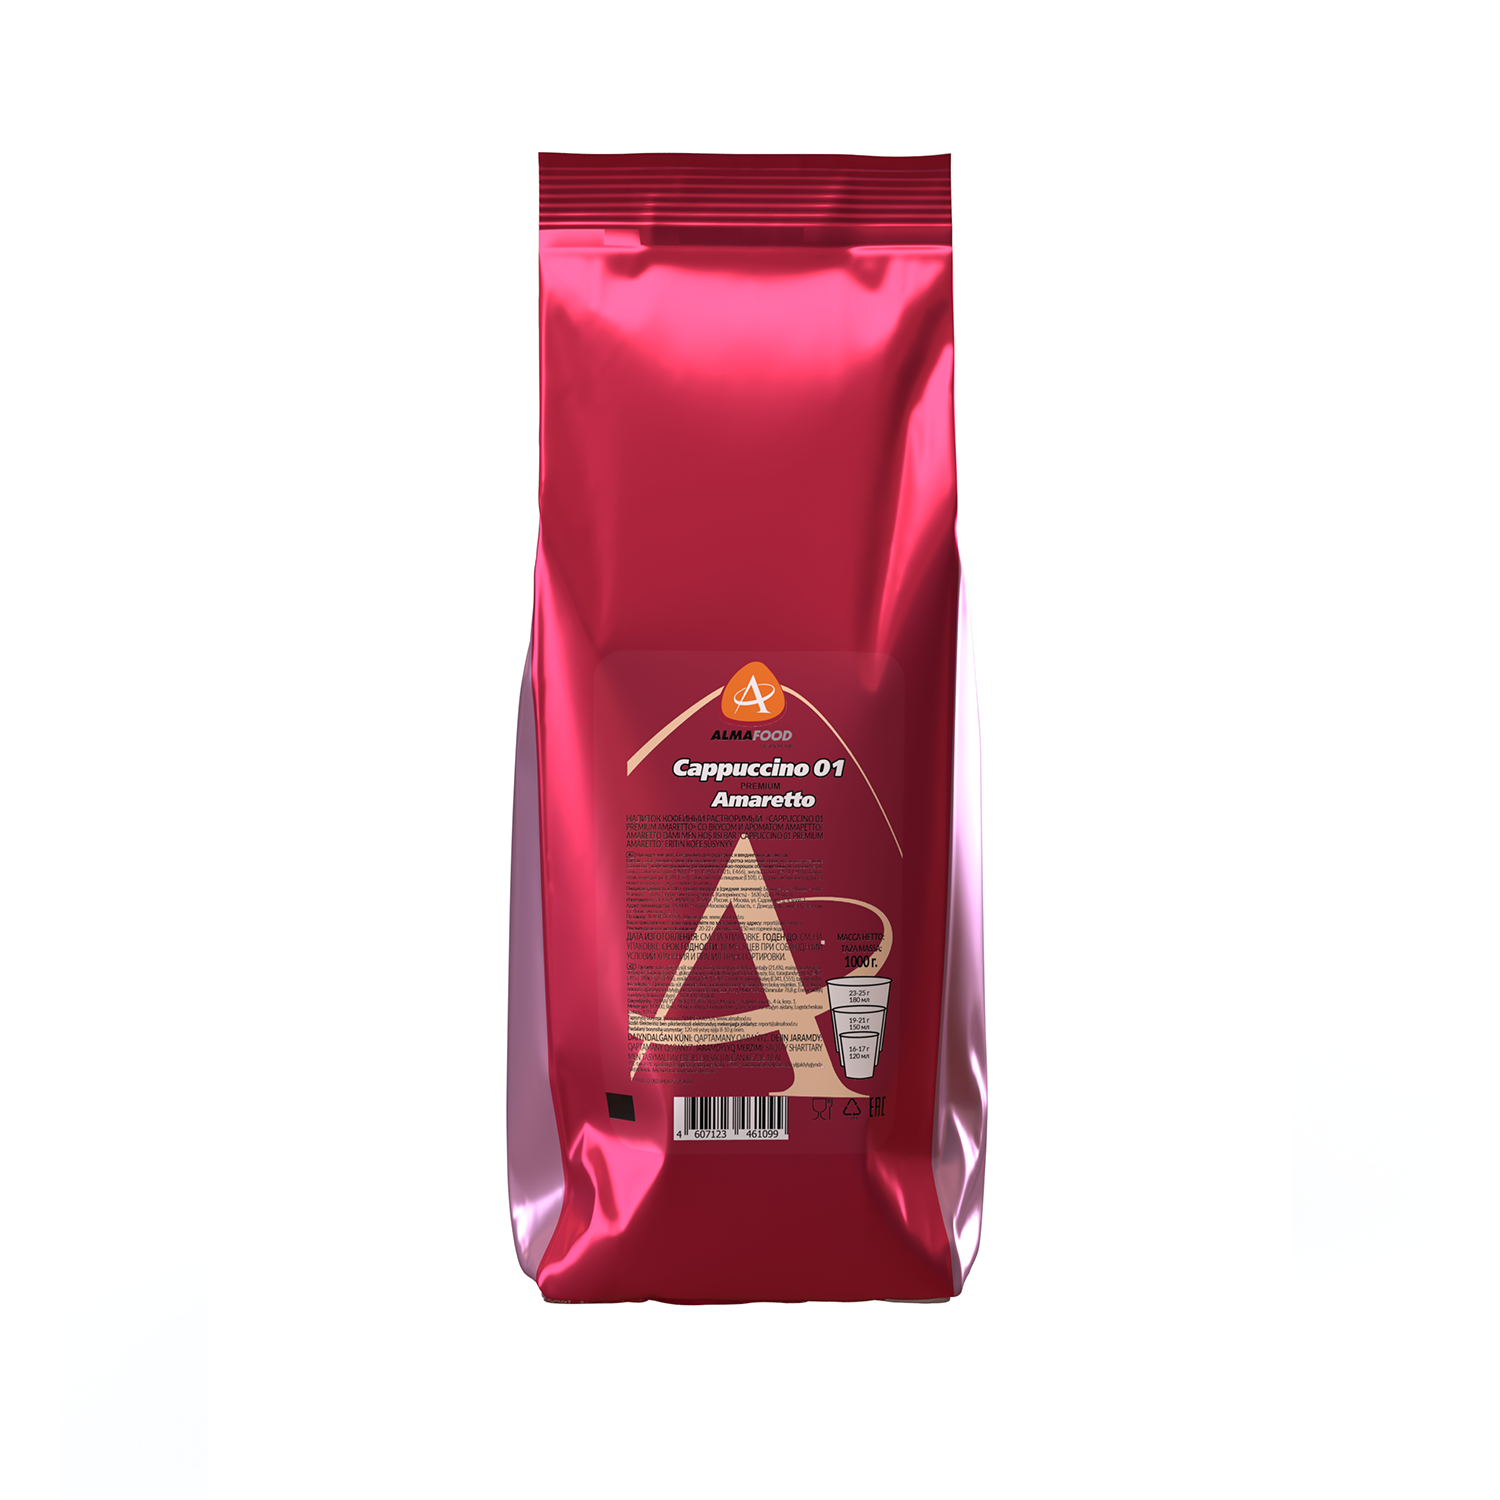 Cappuccino 01 Premium Amaretto